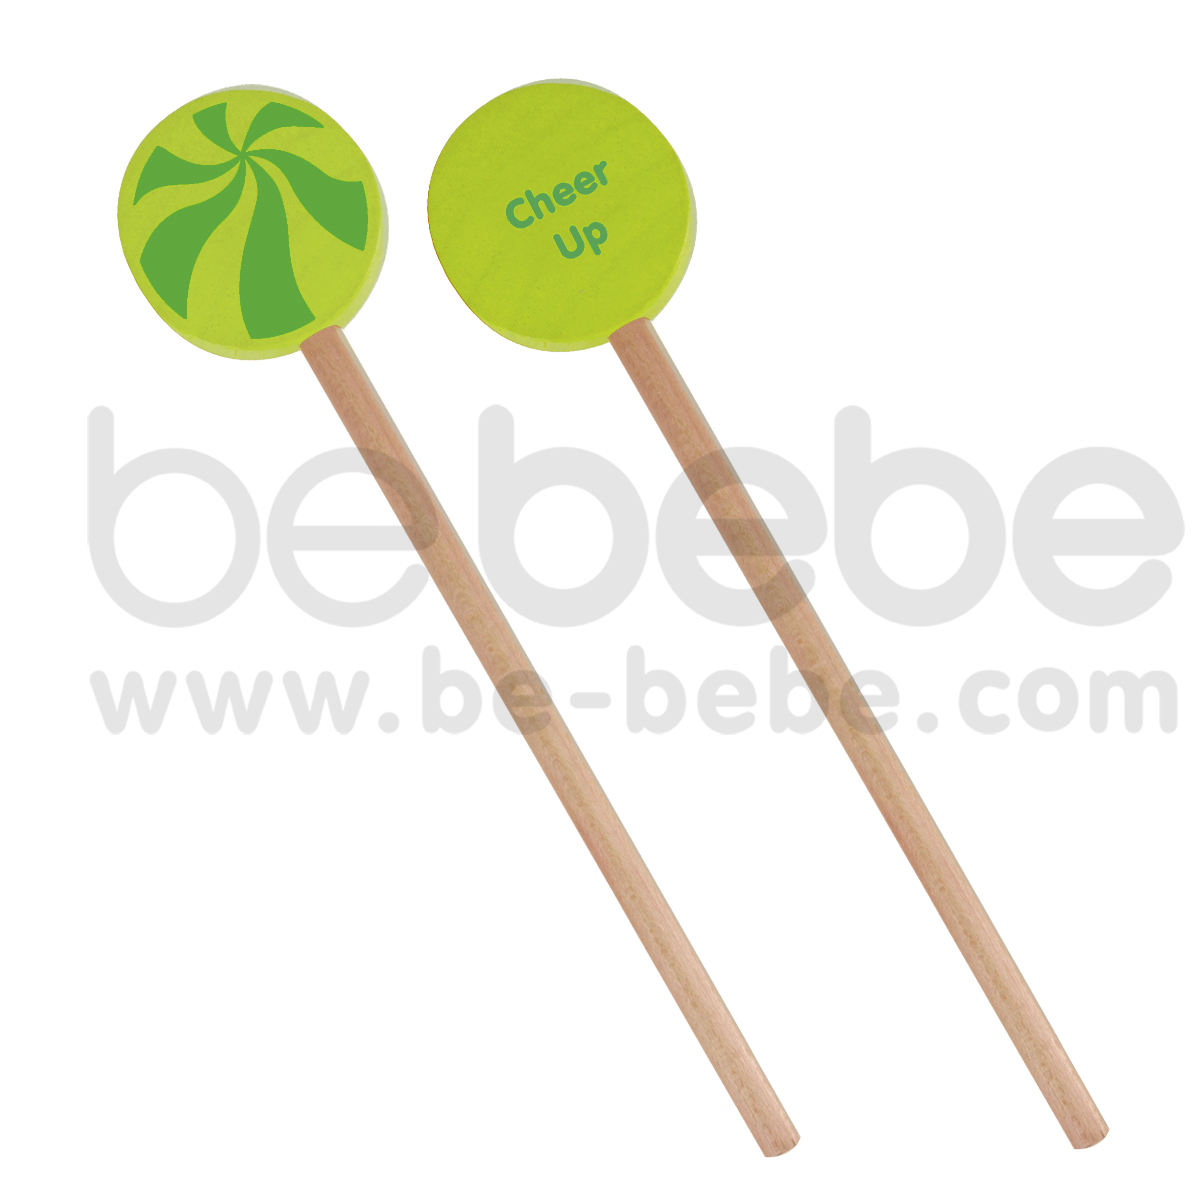 bebebe : Pencil-L-Circle-Cheer up/Green